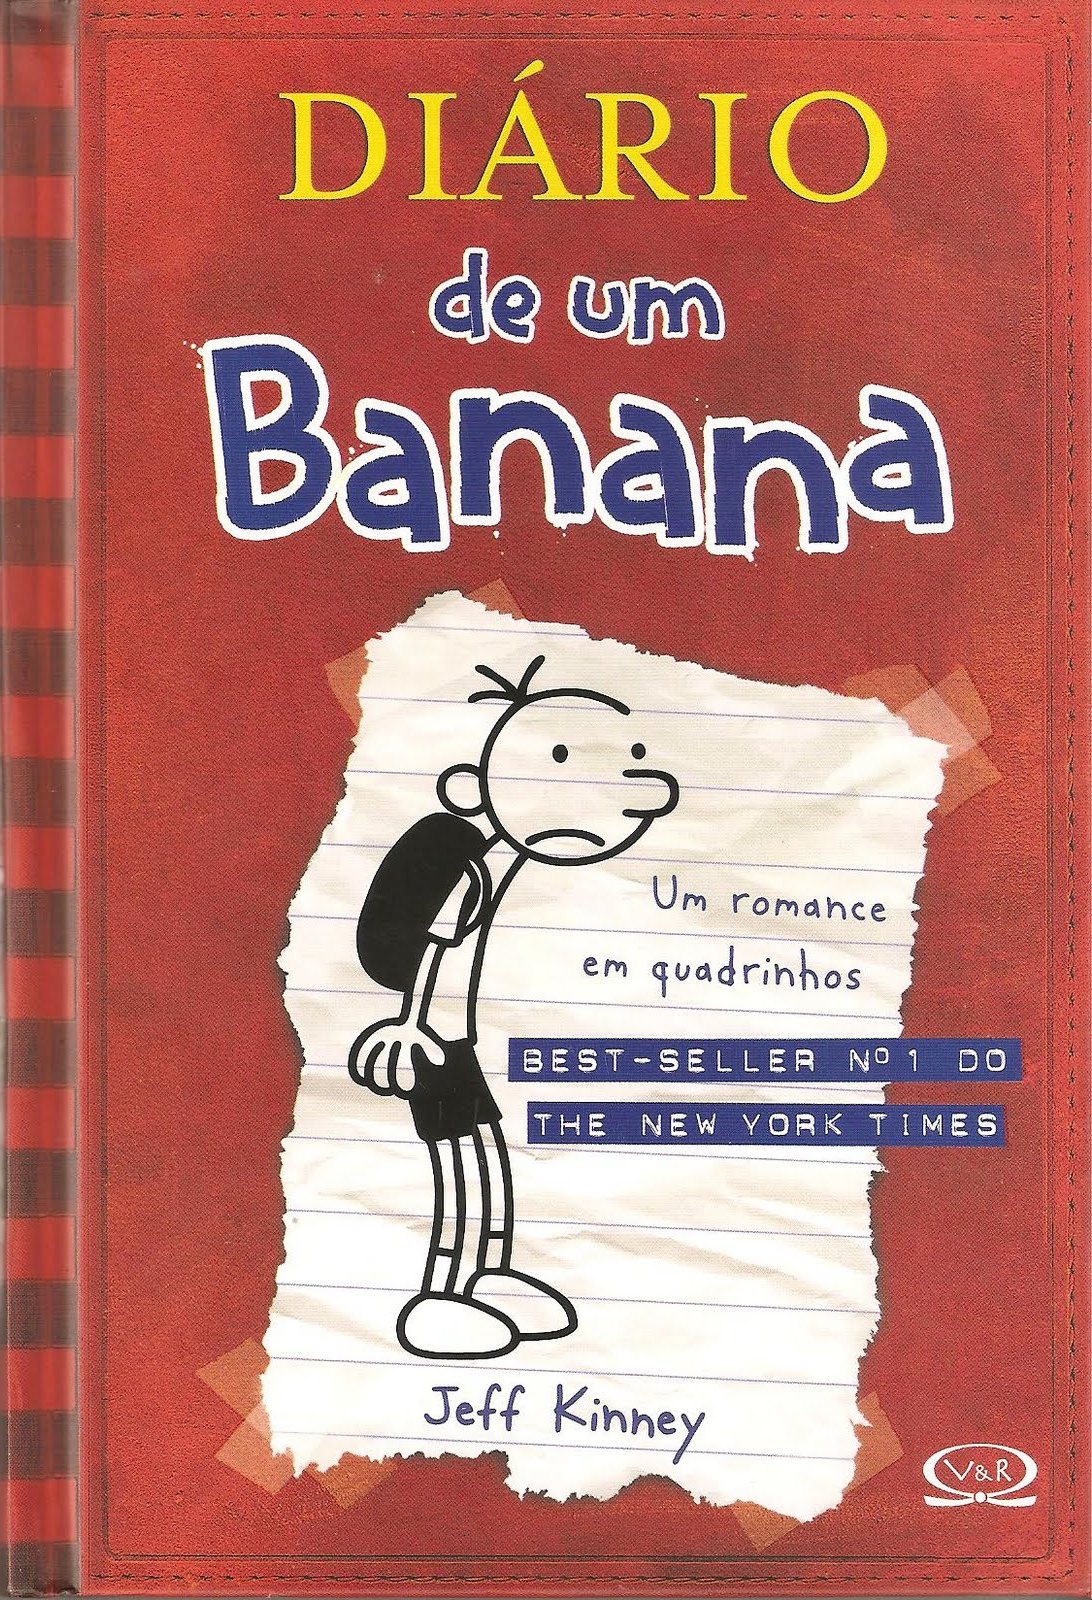 Diário de um Banana (Filme), Diário de um Banana Wikia